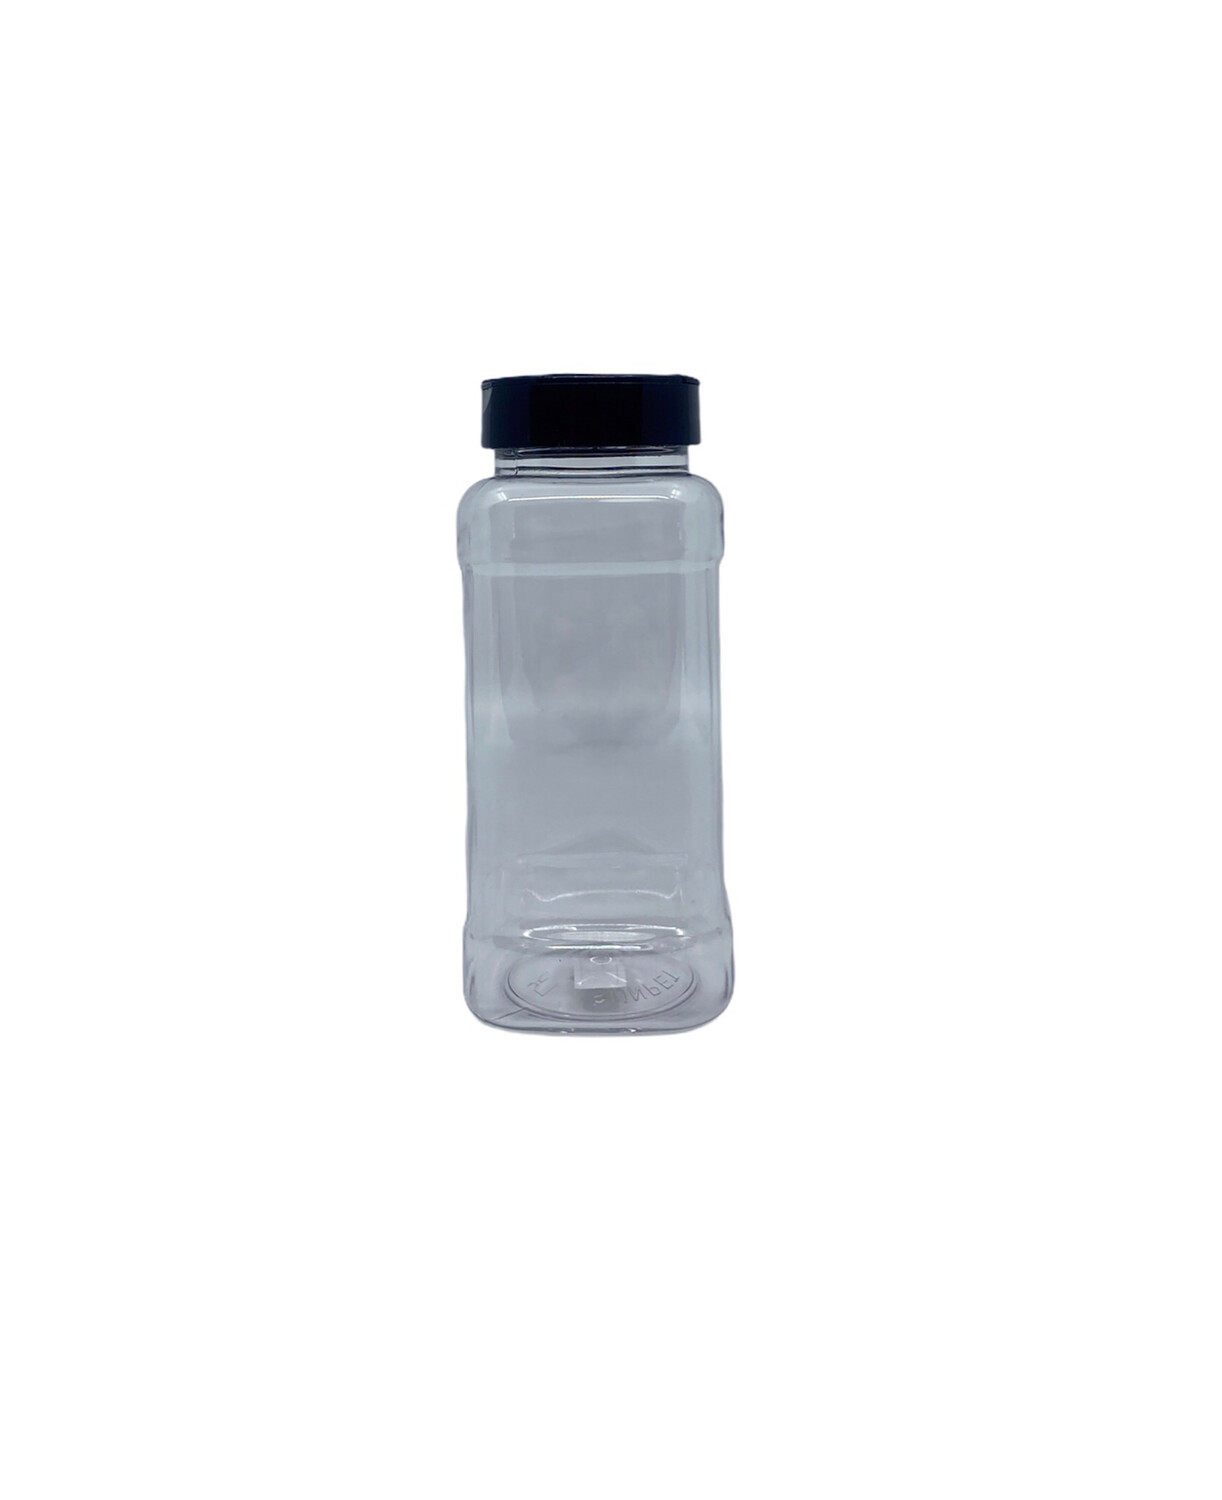 440ml Long Square PET Plastic Spice Jar - Black